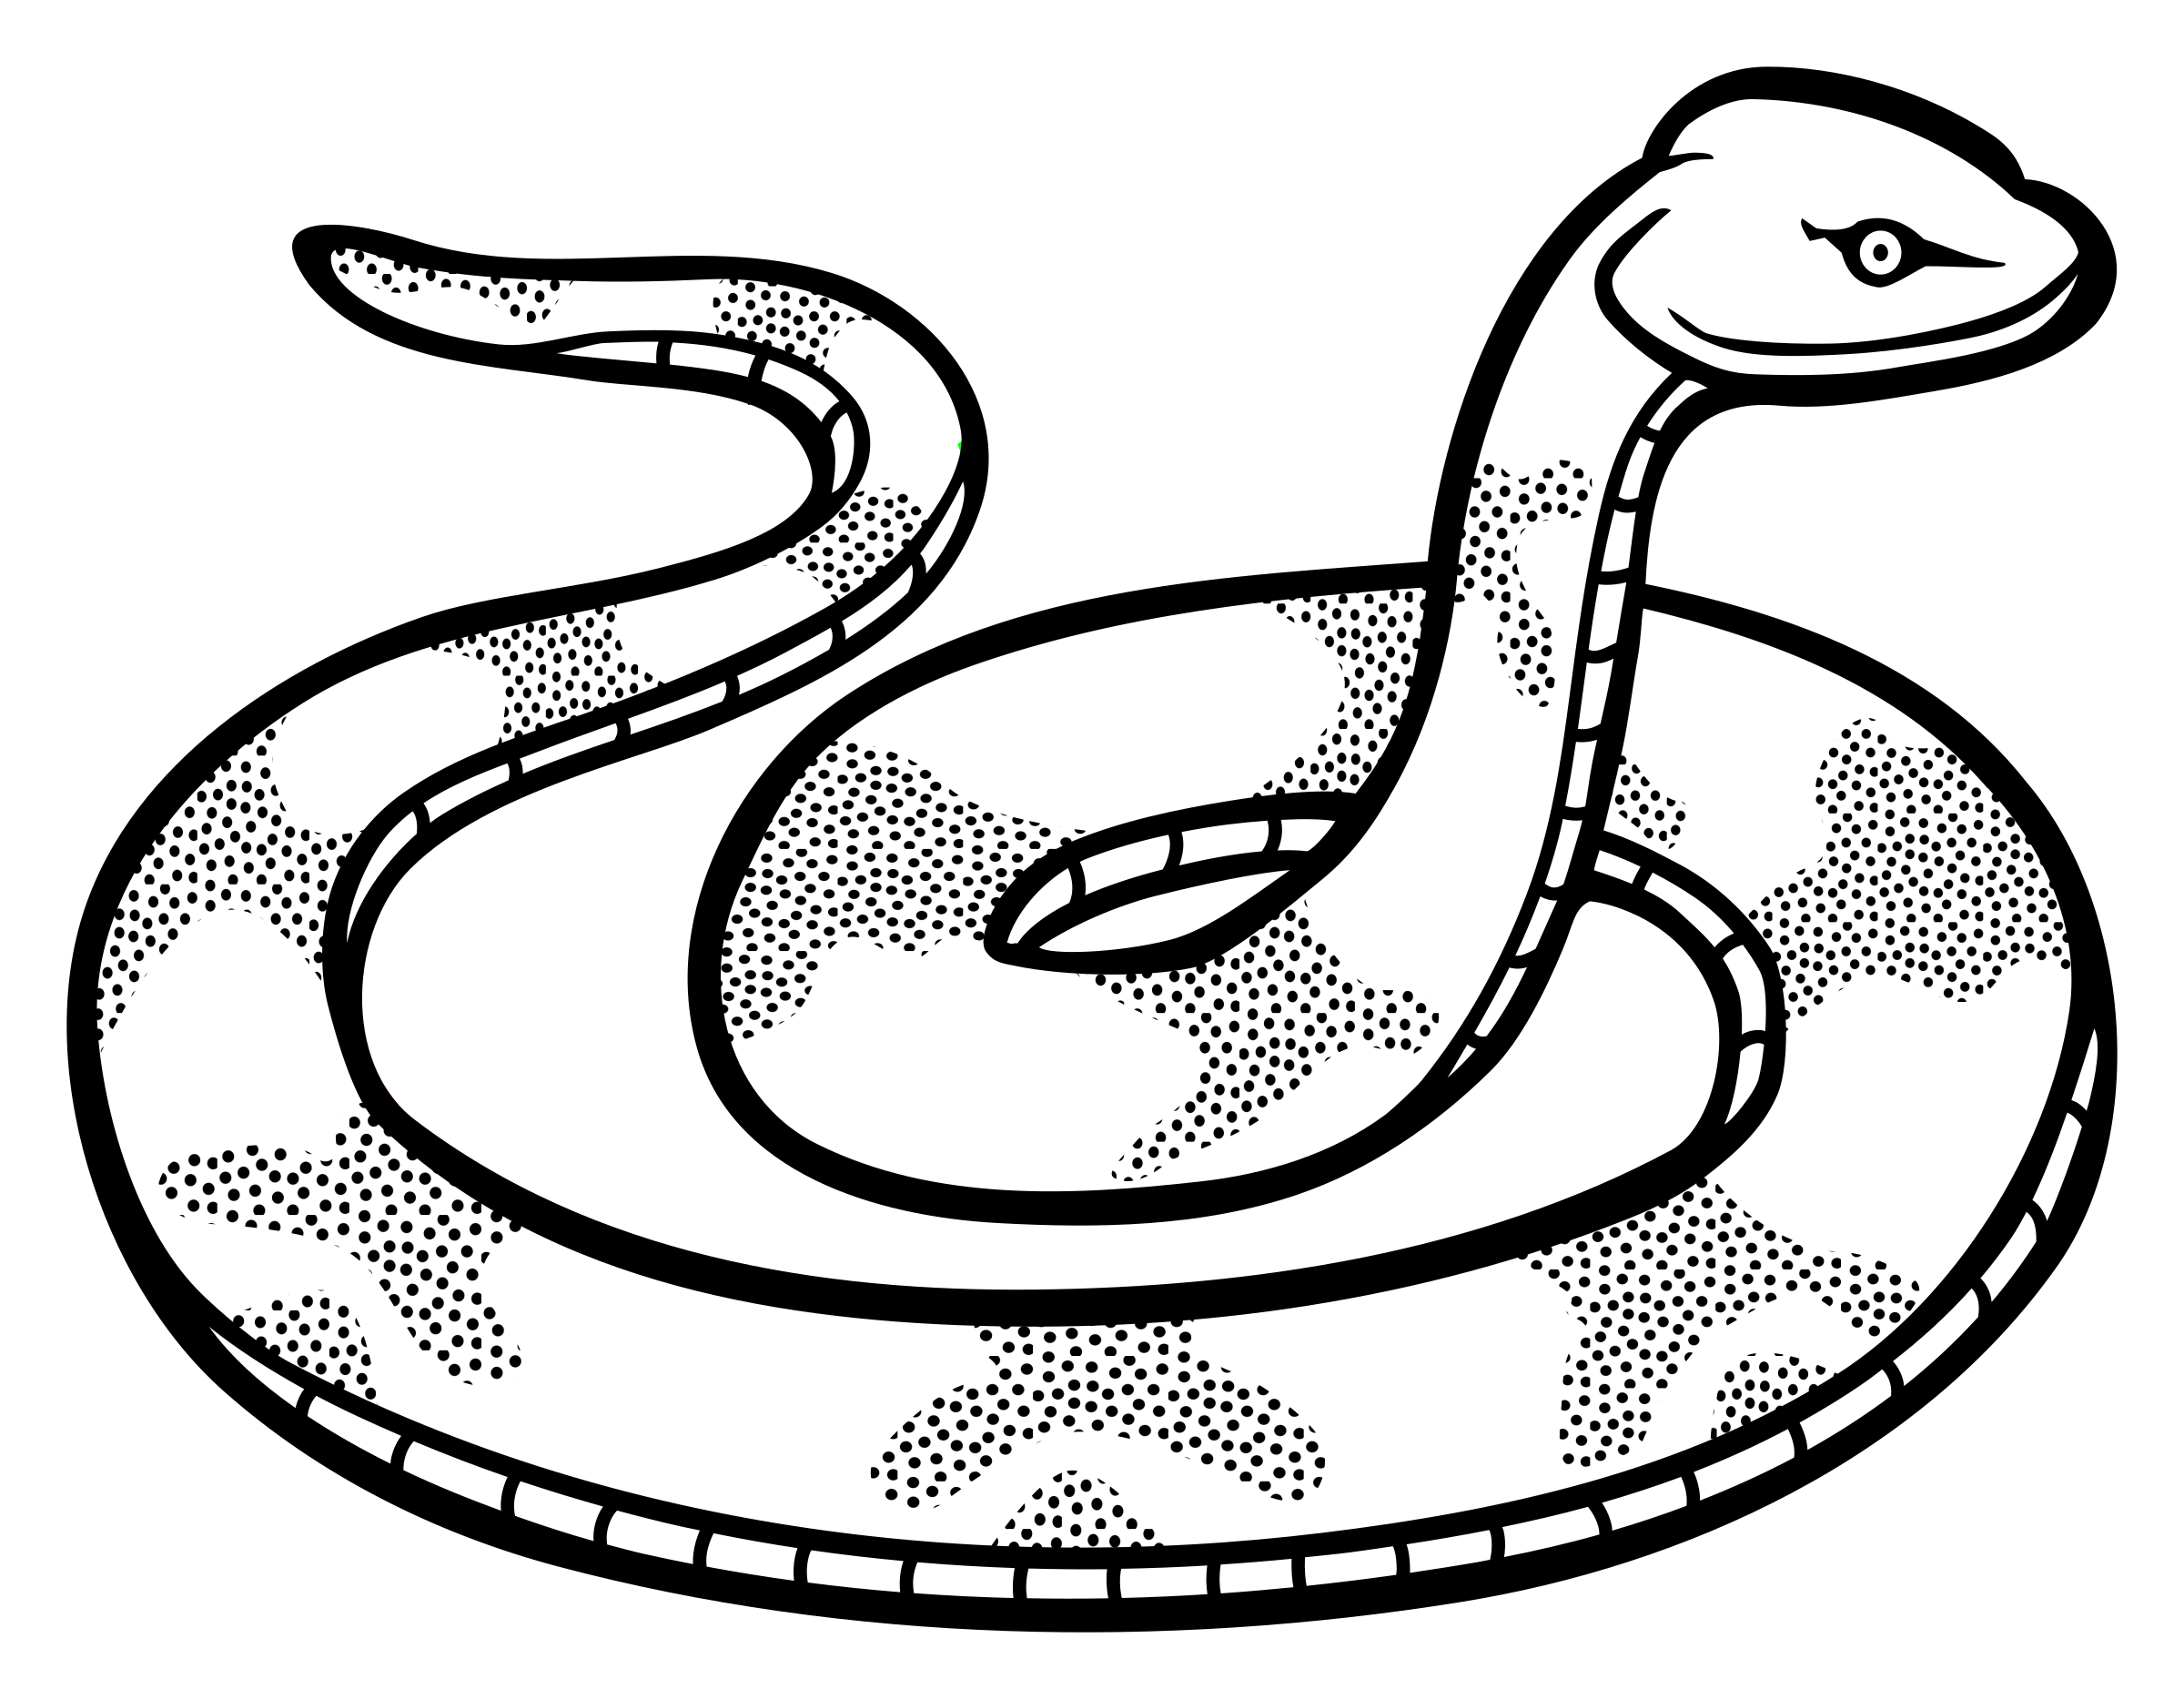 Clipart - snake - lineart